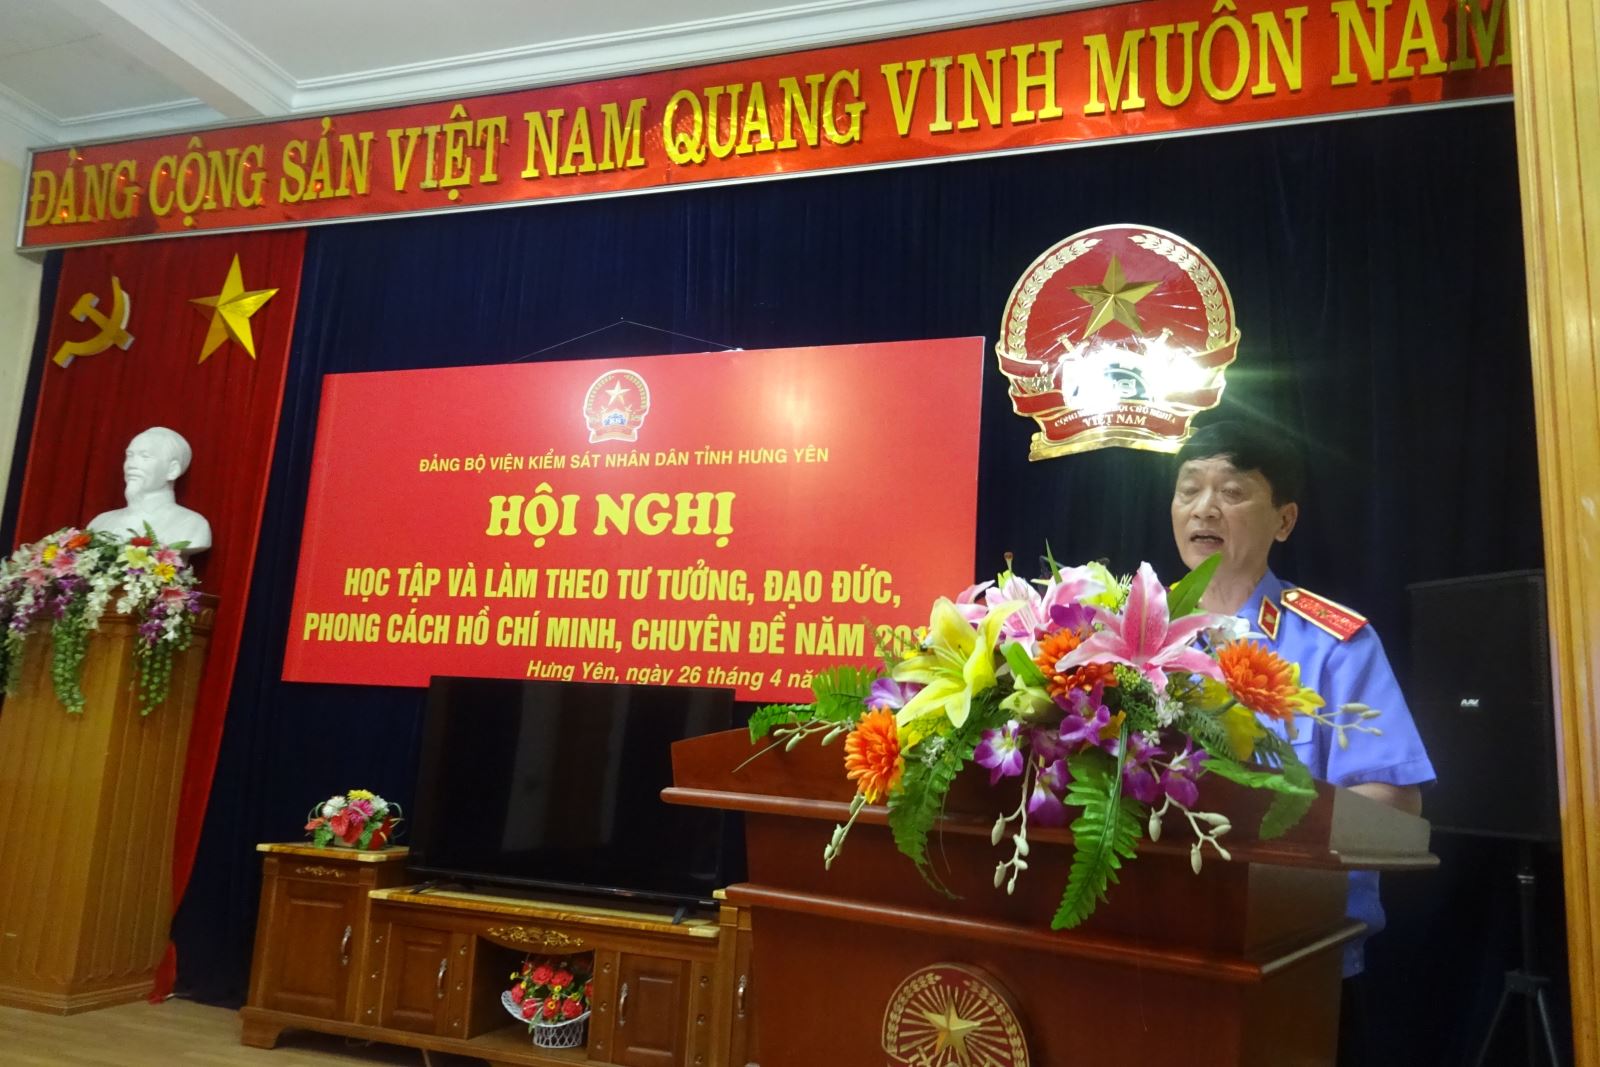 Hội nghị học tập và làm theo tư tưởng, đạo đức, phong cách Hồ Chí Minh, chuyên đề năm 2018